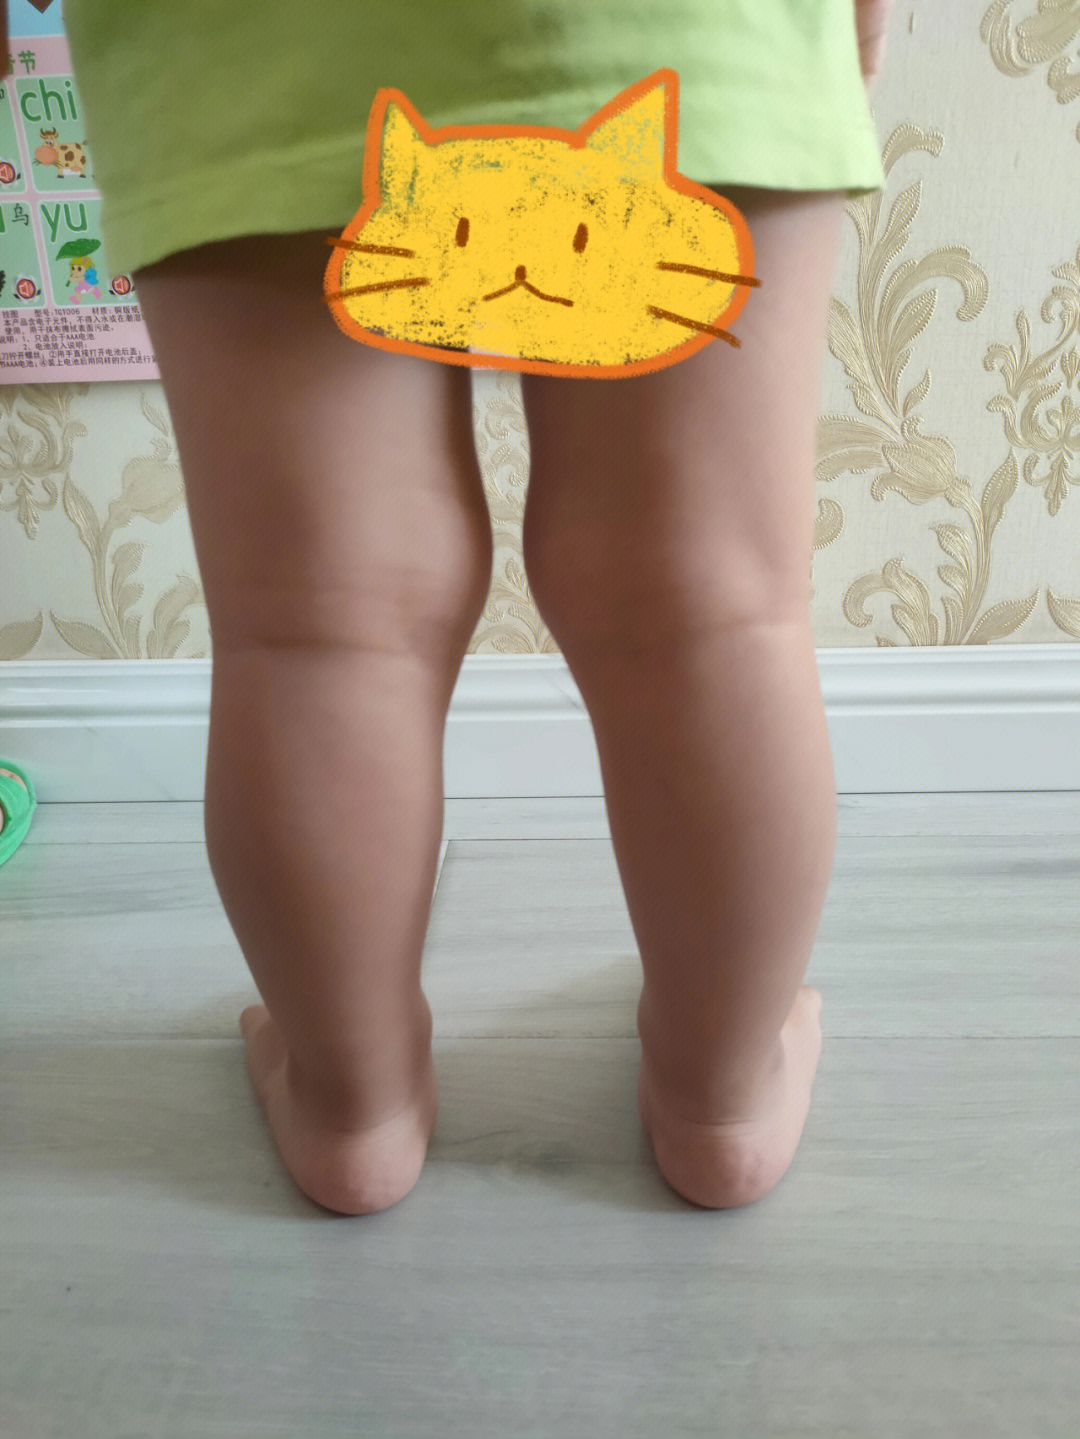 这是x型腿吗2岁